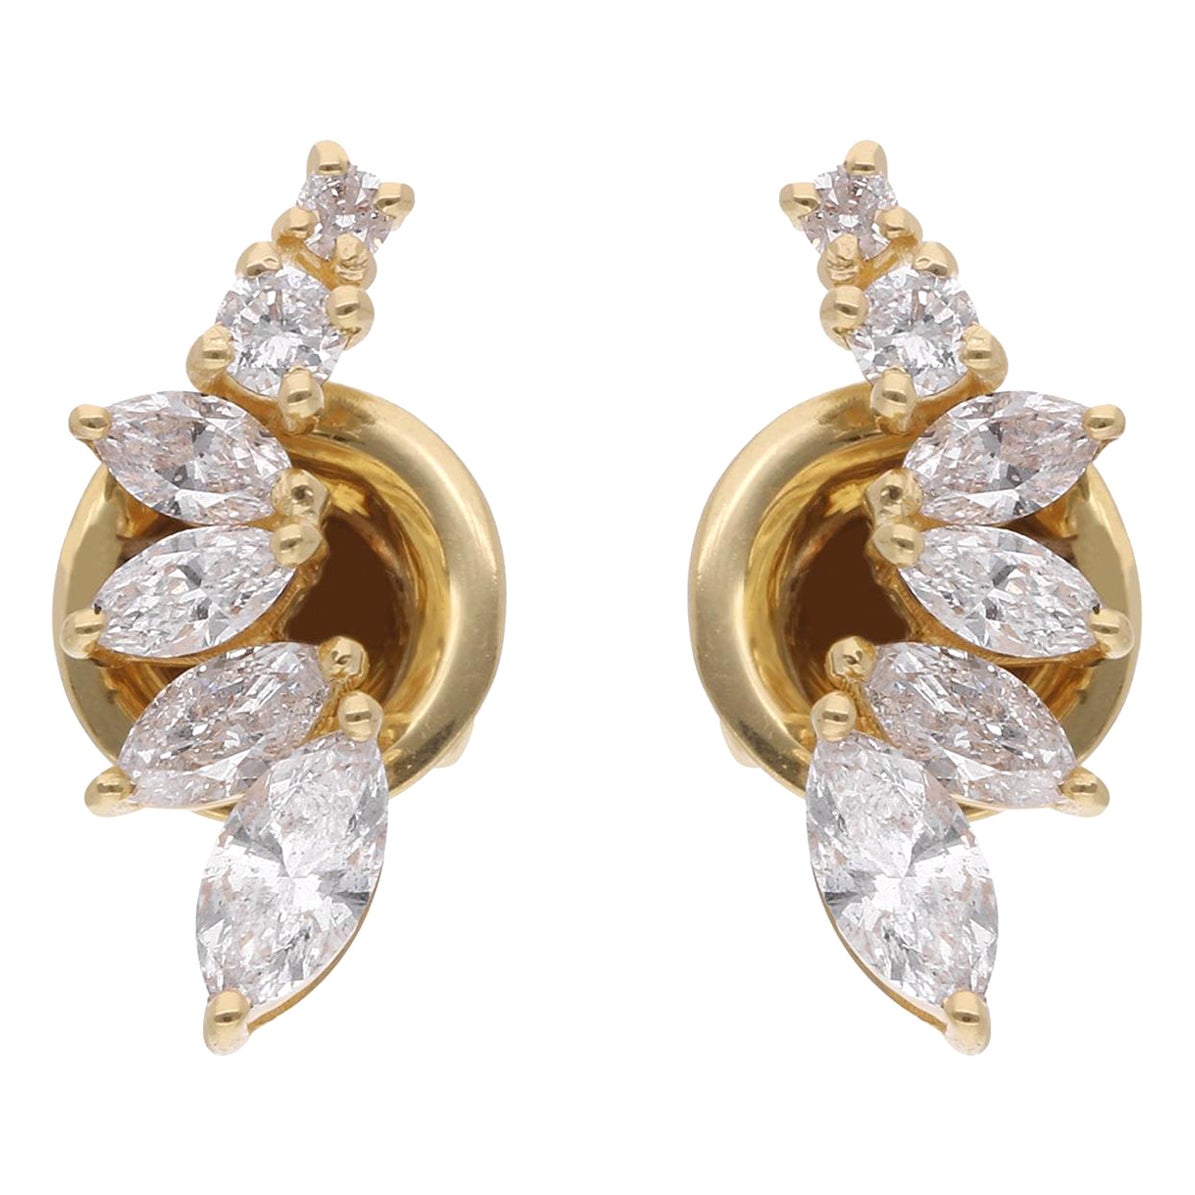 Round & Marquise Diamond Stud Earrings 14 Karat Yellow Gold Handmade Jewelry